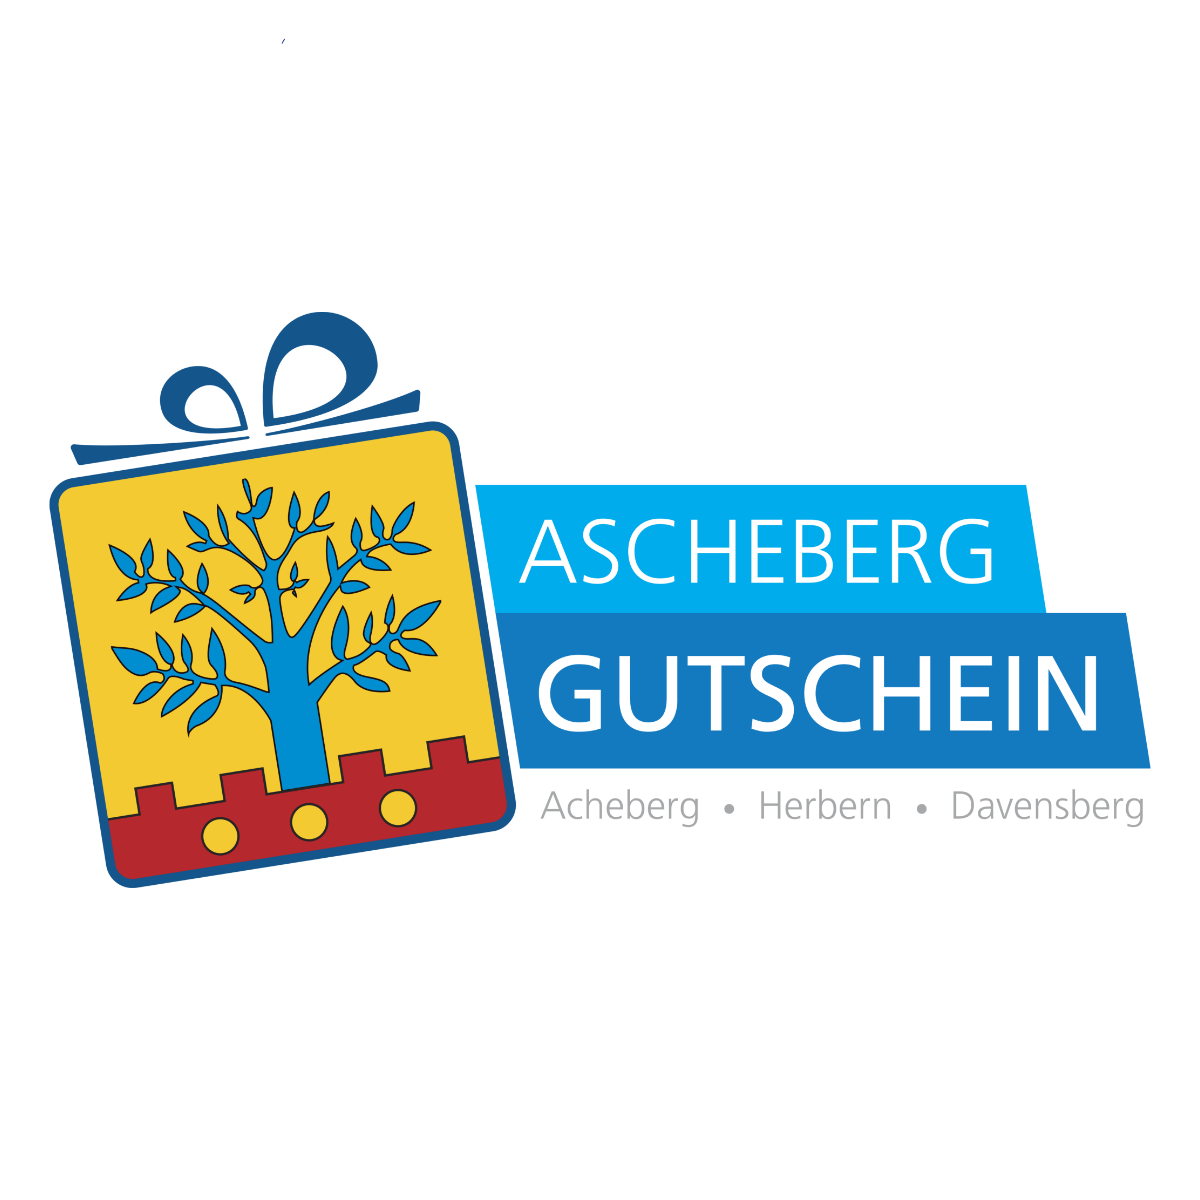 (c) Ascheberg-gutschein.de